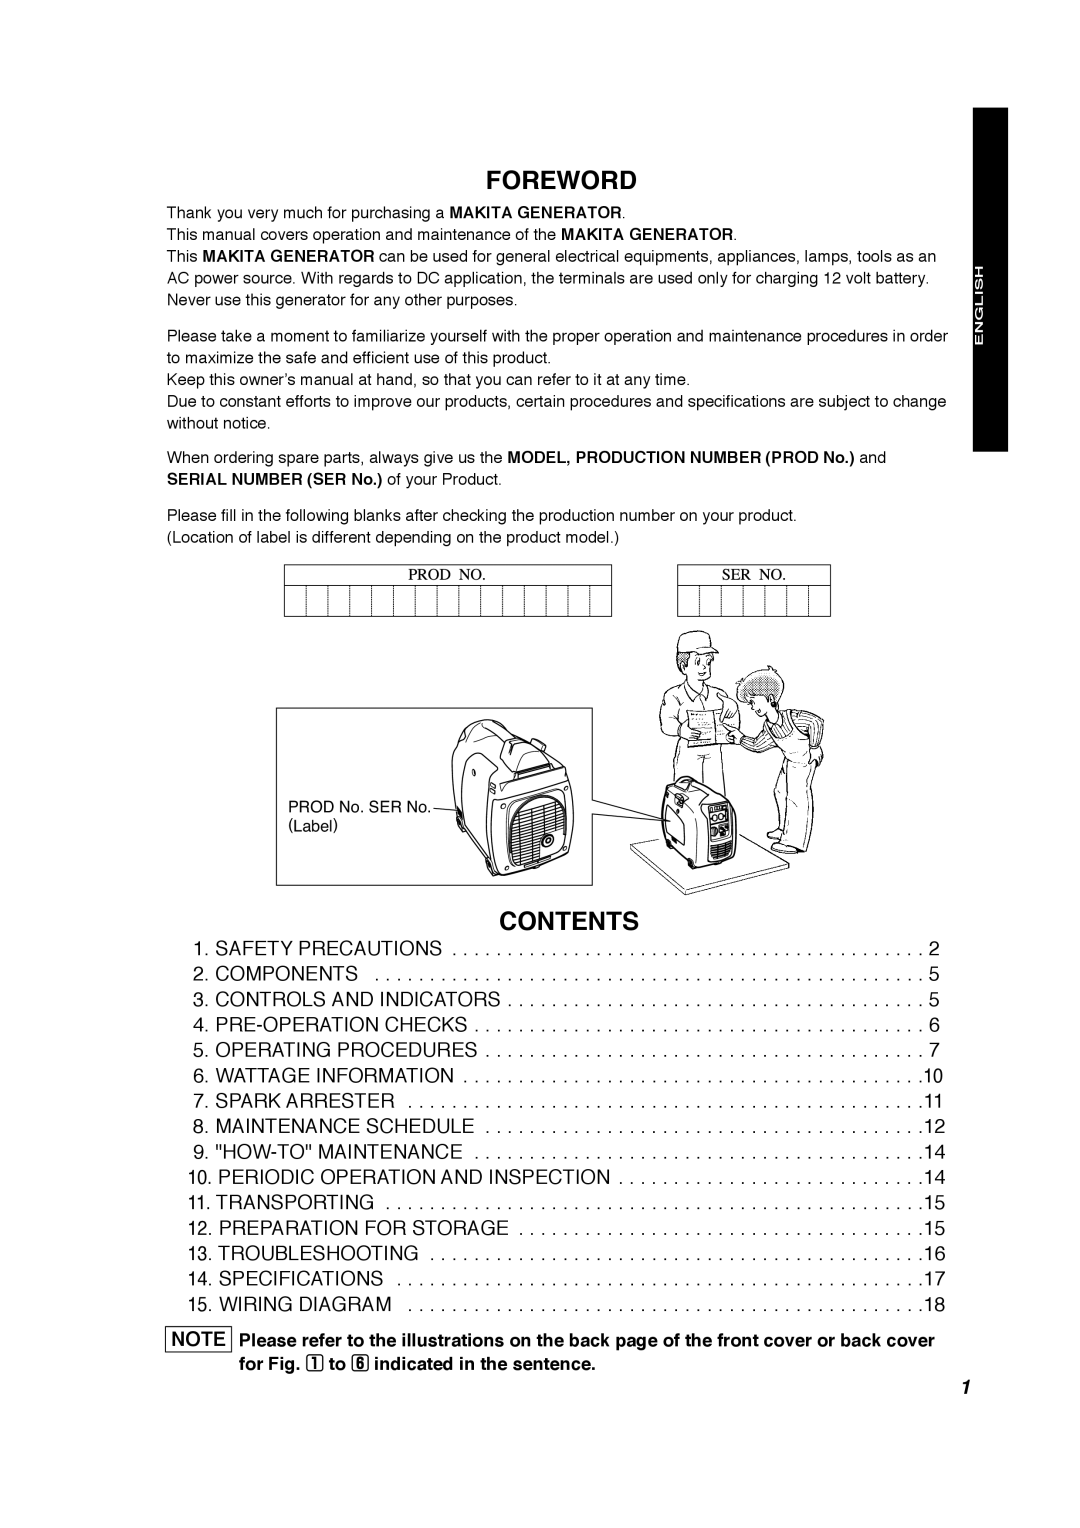 Makita G1700i manual Foreword, Contents 